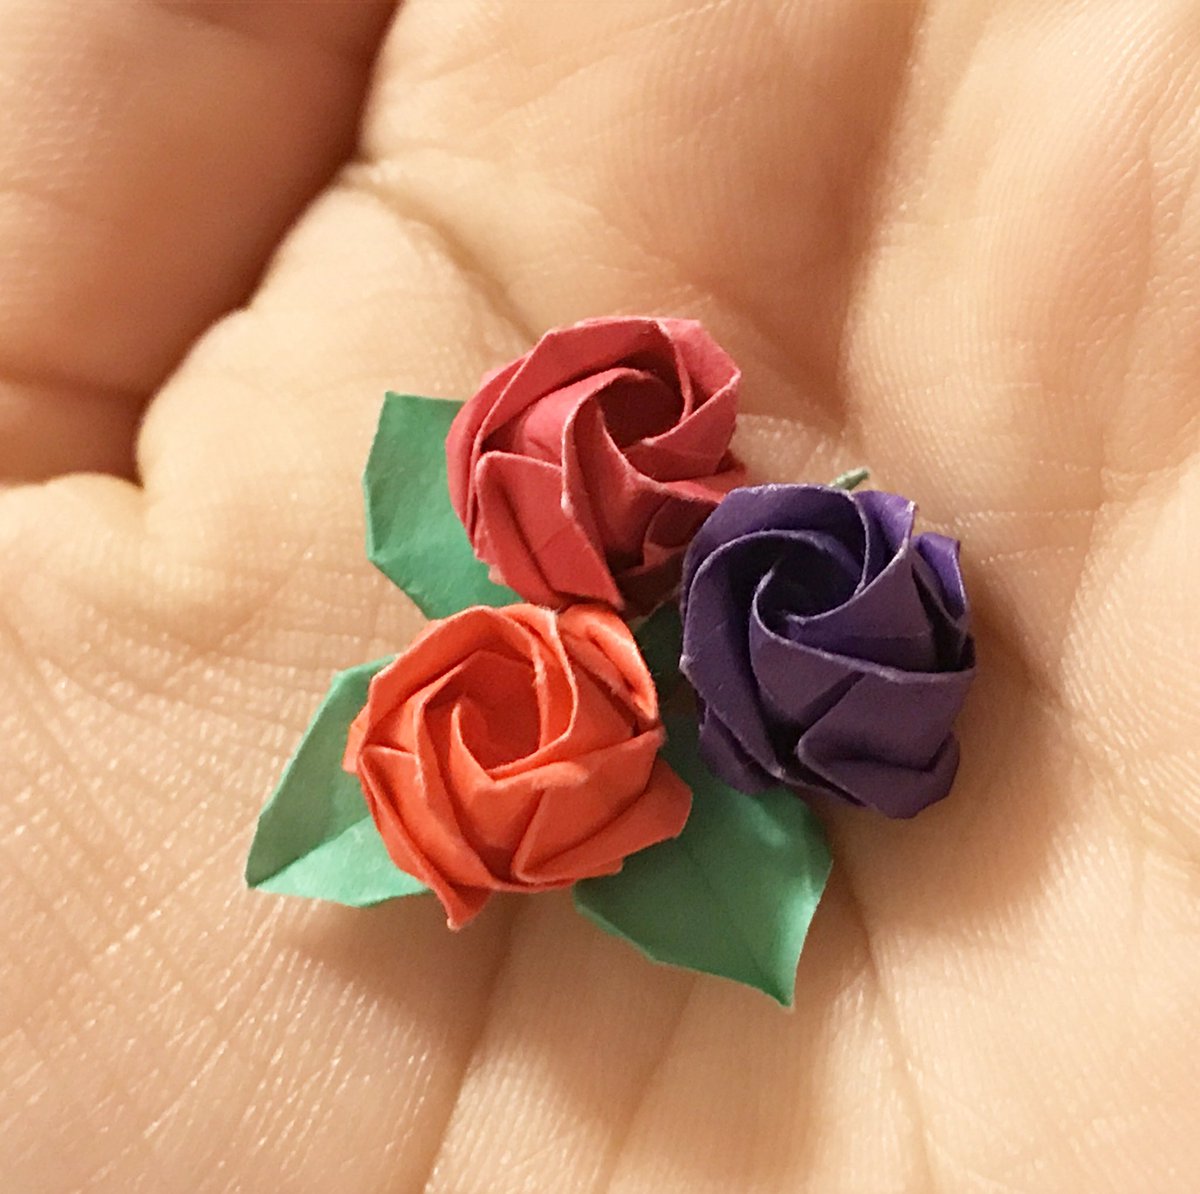 ユイ 思ったよりかわいい レジンでかためたらいい感じになりそう ちなみに葉っぱの方が難しかった 私には おりがみ 折り紙 折紙 Origami ばら 薔薇 バラ ローズ Rose T Co Wmm9wc9xil T Co Ixaki69vkq